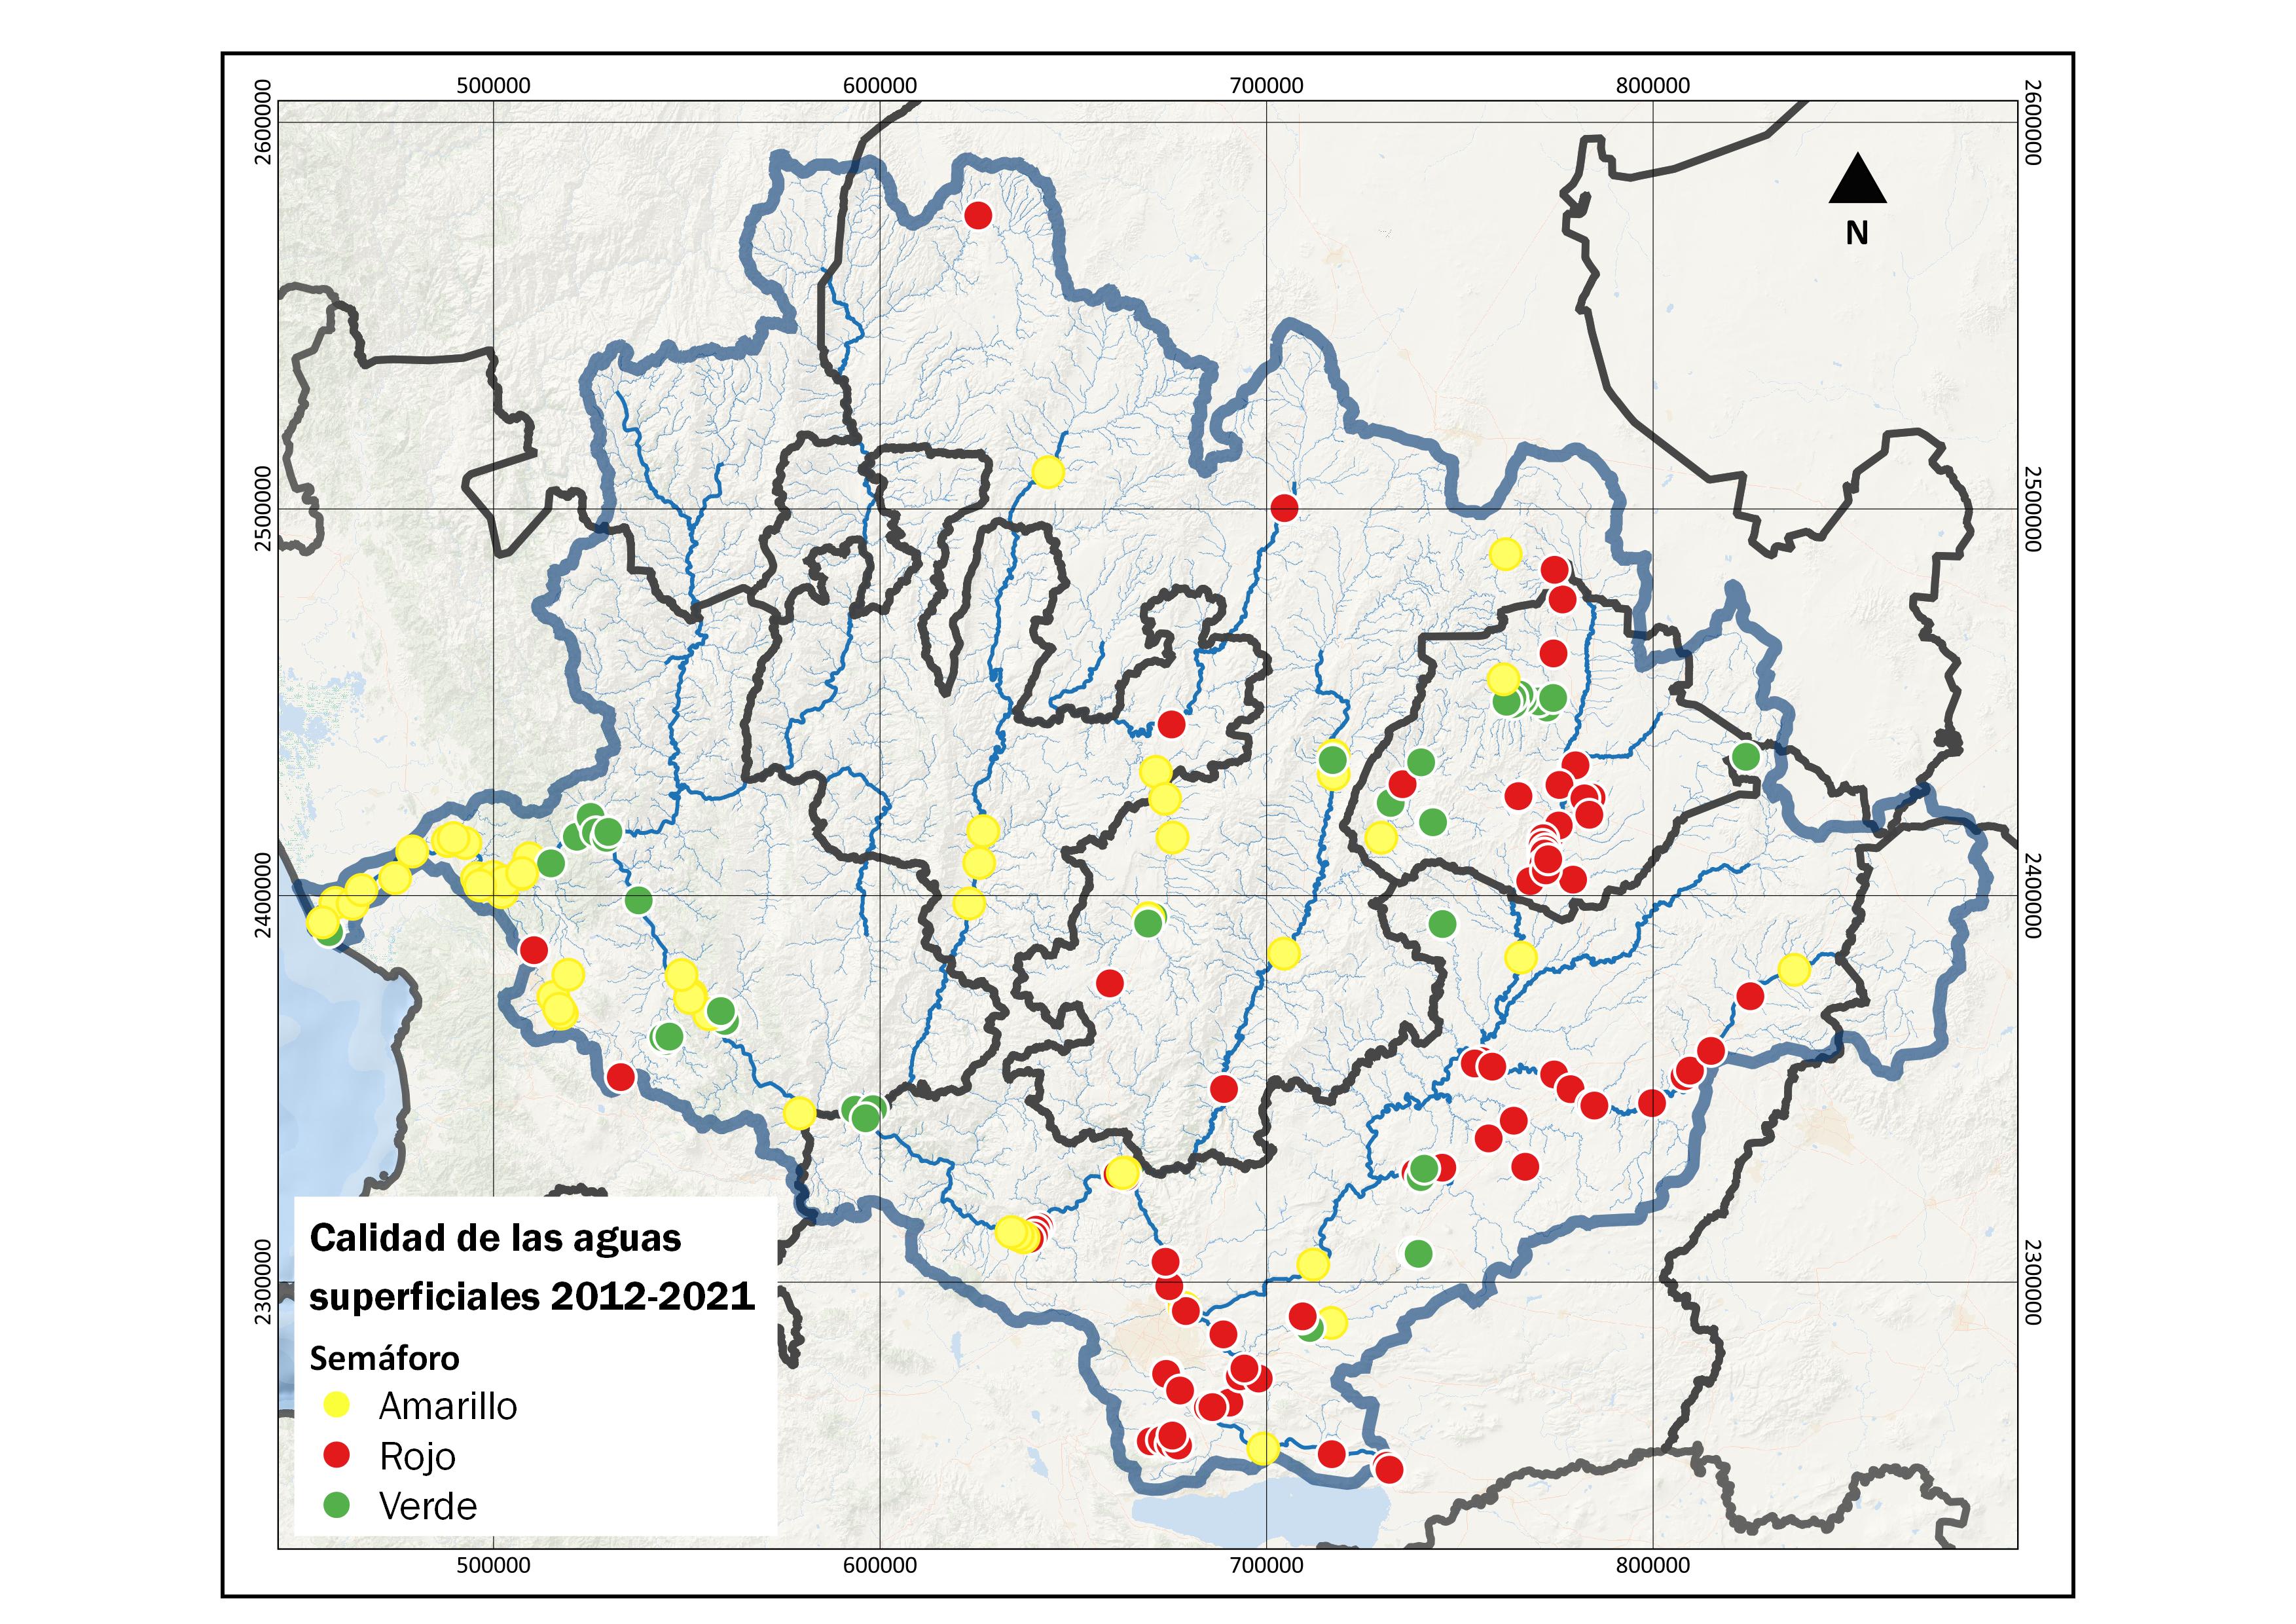 Calidad aguas superficiales 2012-2021